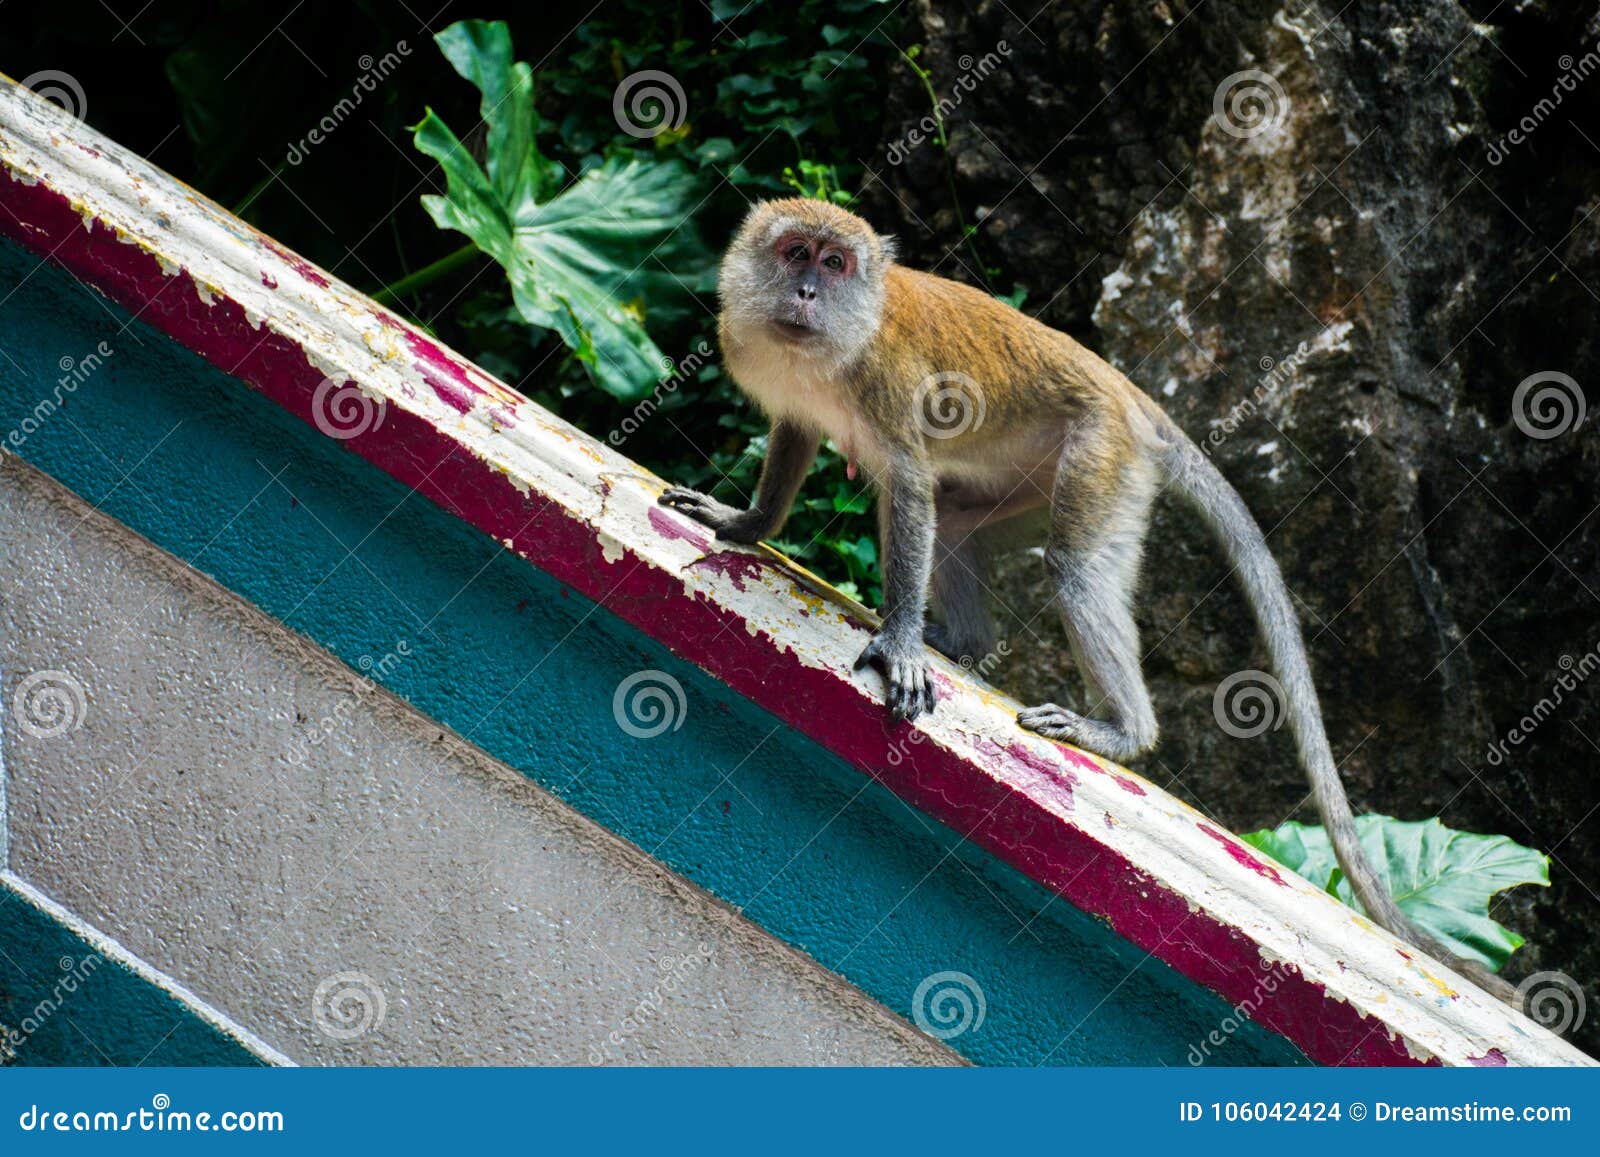 monkeys in kuala lumpur, malasia